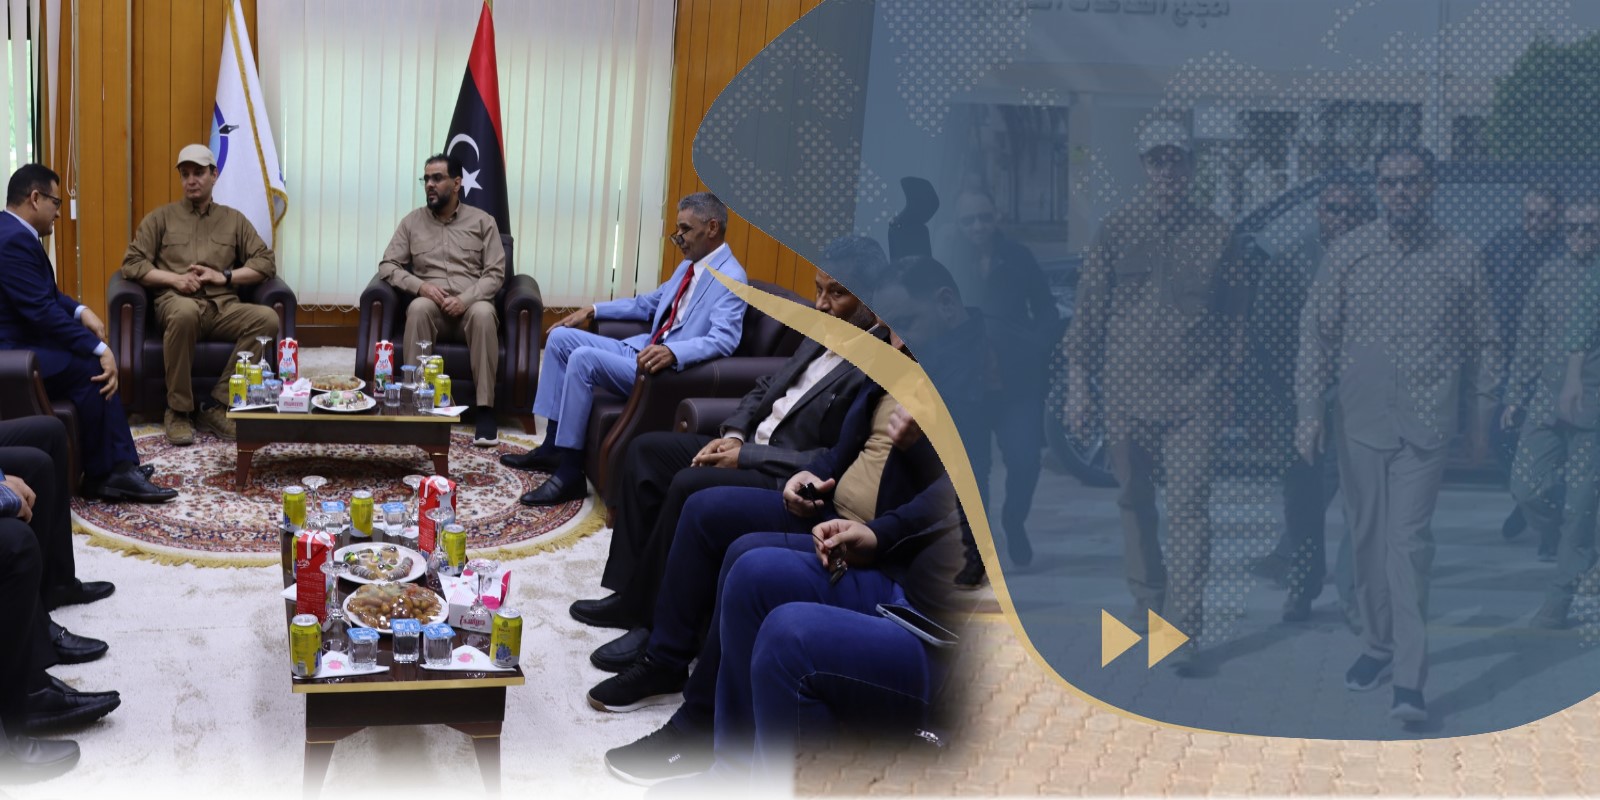 جامعة سرت تستقبل رئيس الحكومة الليبية ومدير عام صندوق التنمية والإعمار، ورئيس لجنة إعادة الإعمار والاستقرار.